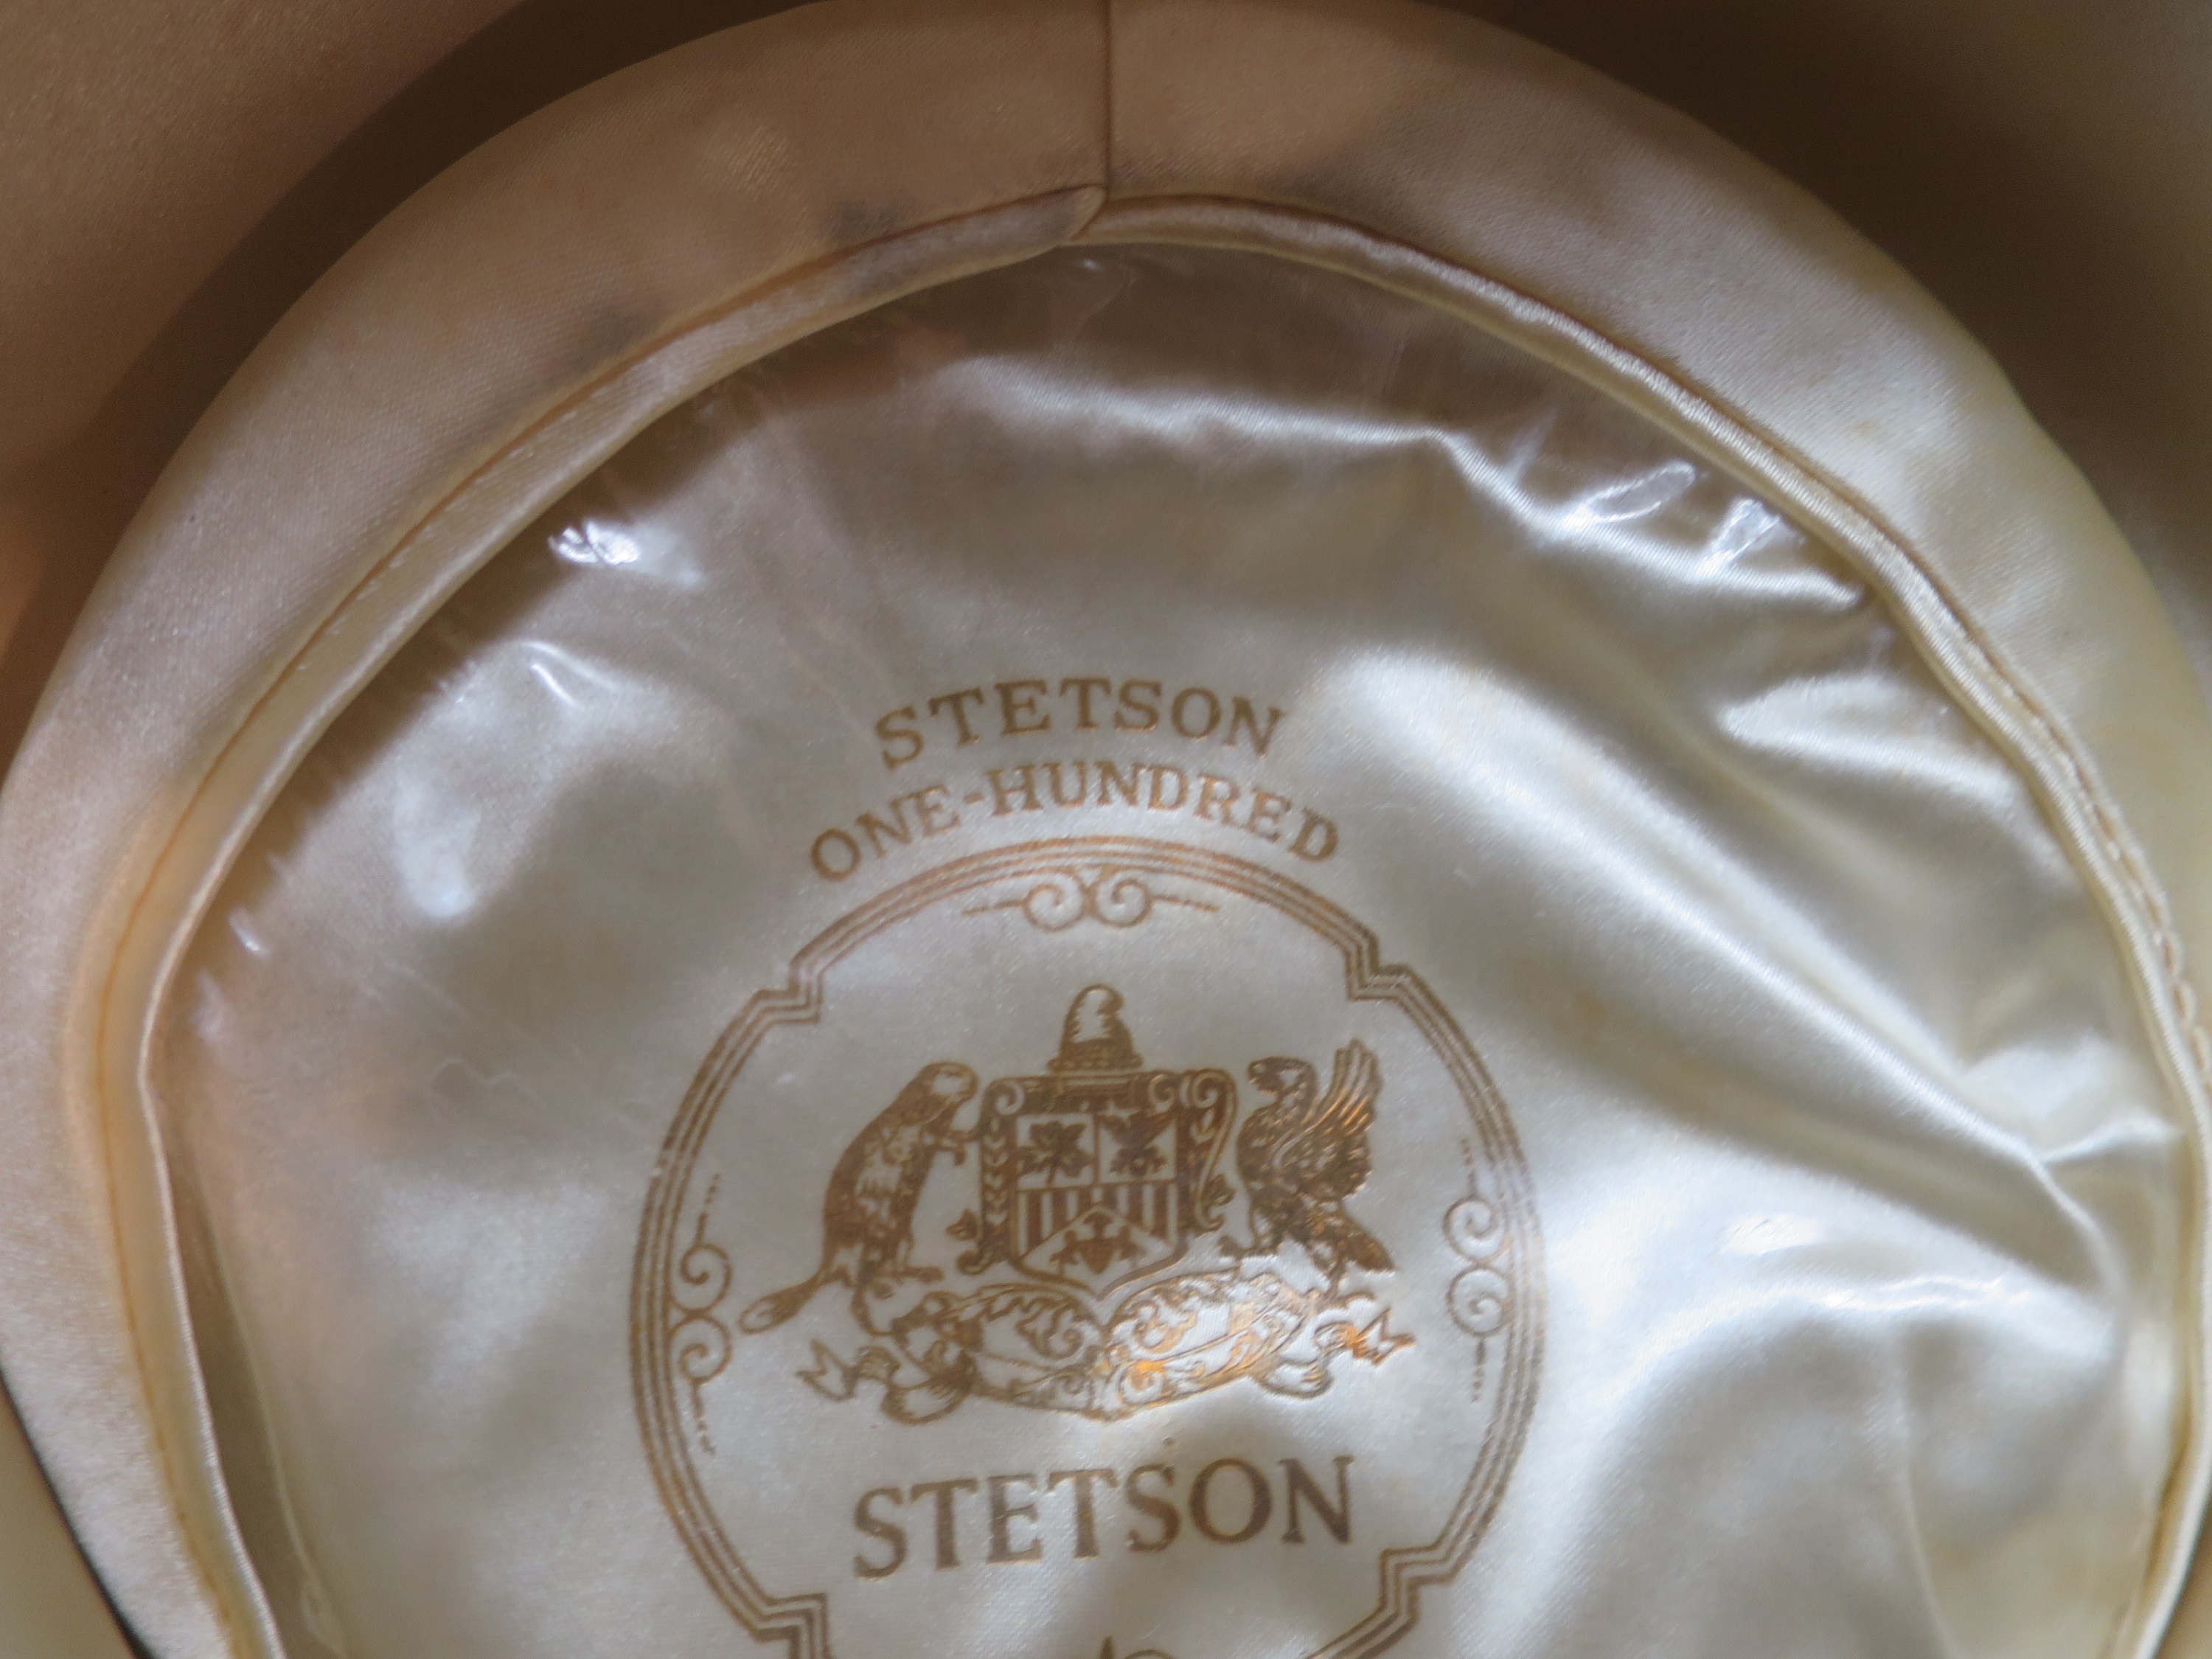 Stetson one hundred 2018-11-17 003.JPG